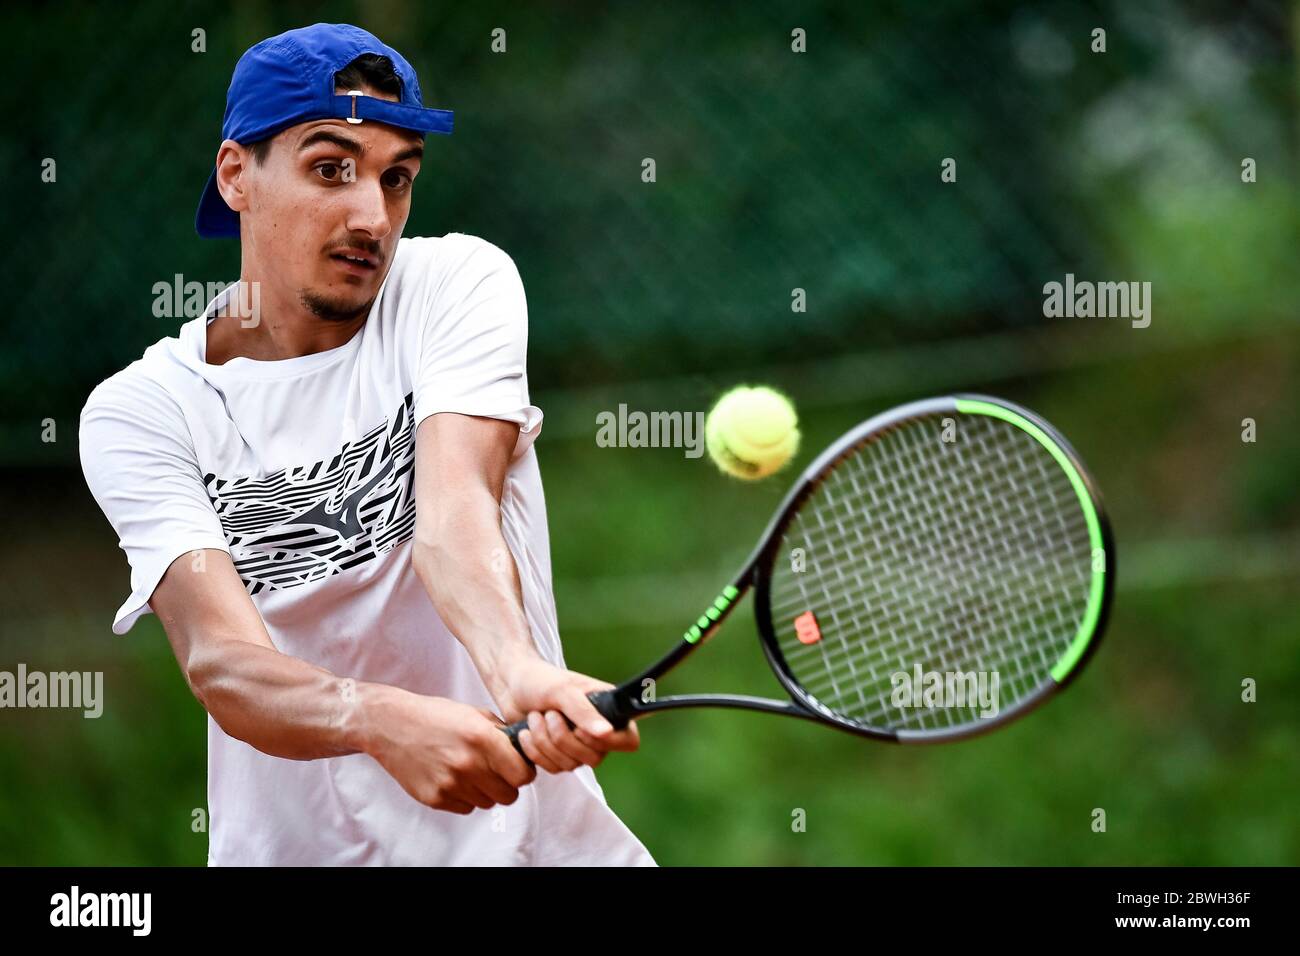 Turin, Italie - 01 juin 2020 : Lorenzo Sonego, actuellement numéro 46 du classement  ATP, joue un revers lors d'une formation de tennis. Les athlètes ont  recommencé à s'entraîner après le verrouillage